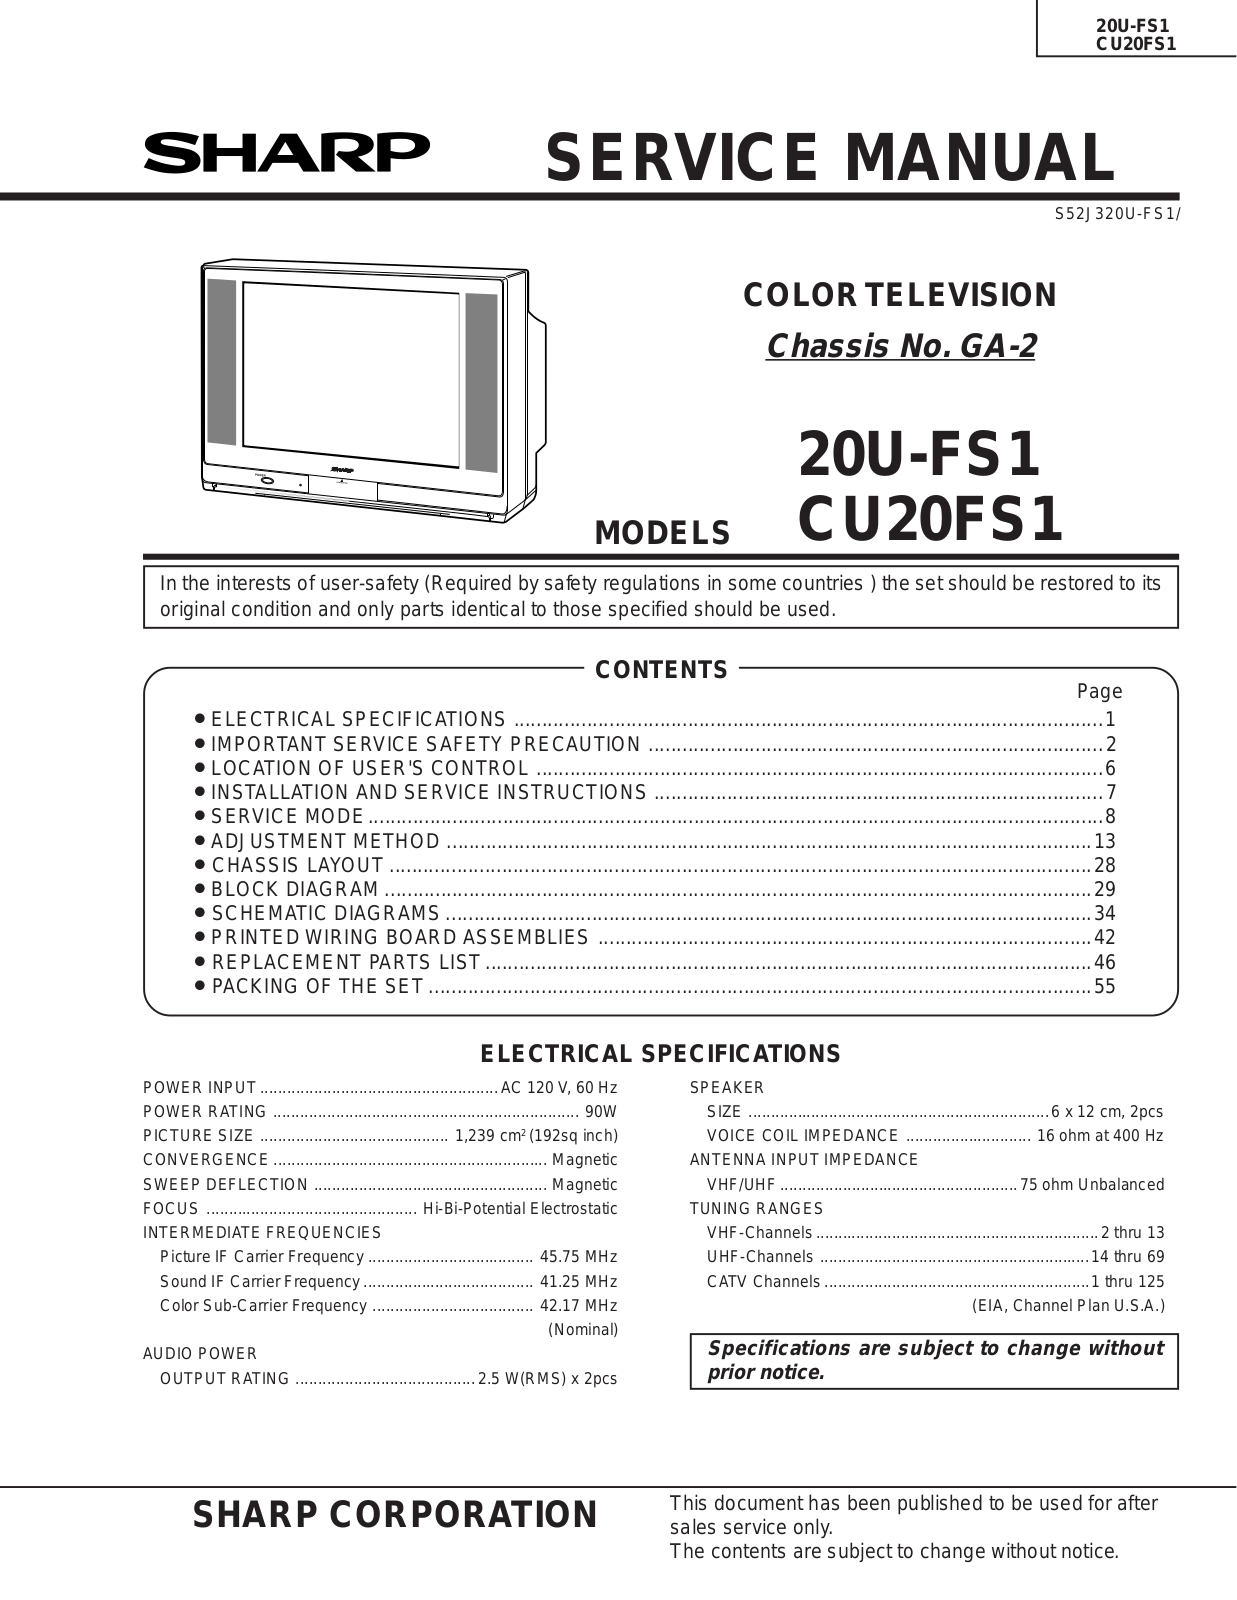 SHARP 20U-FS1, CU20FS1 Service Manual